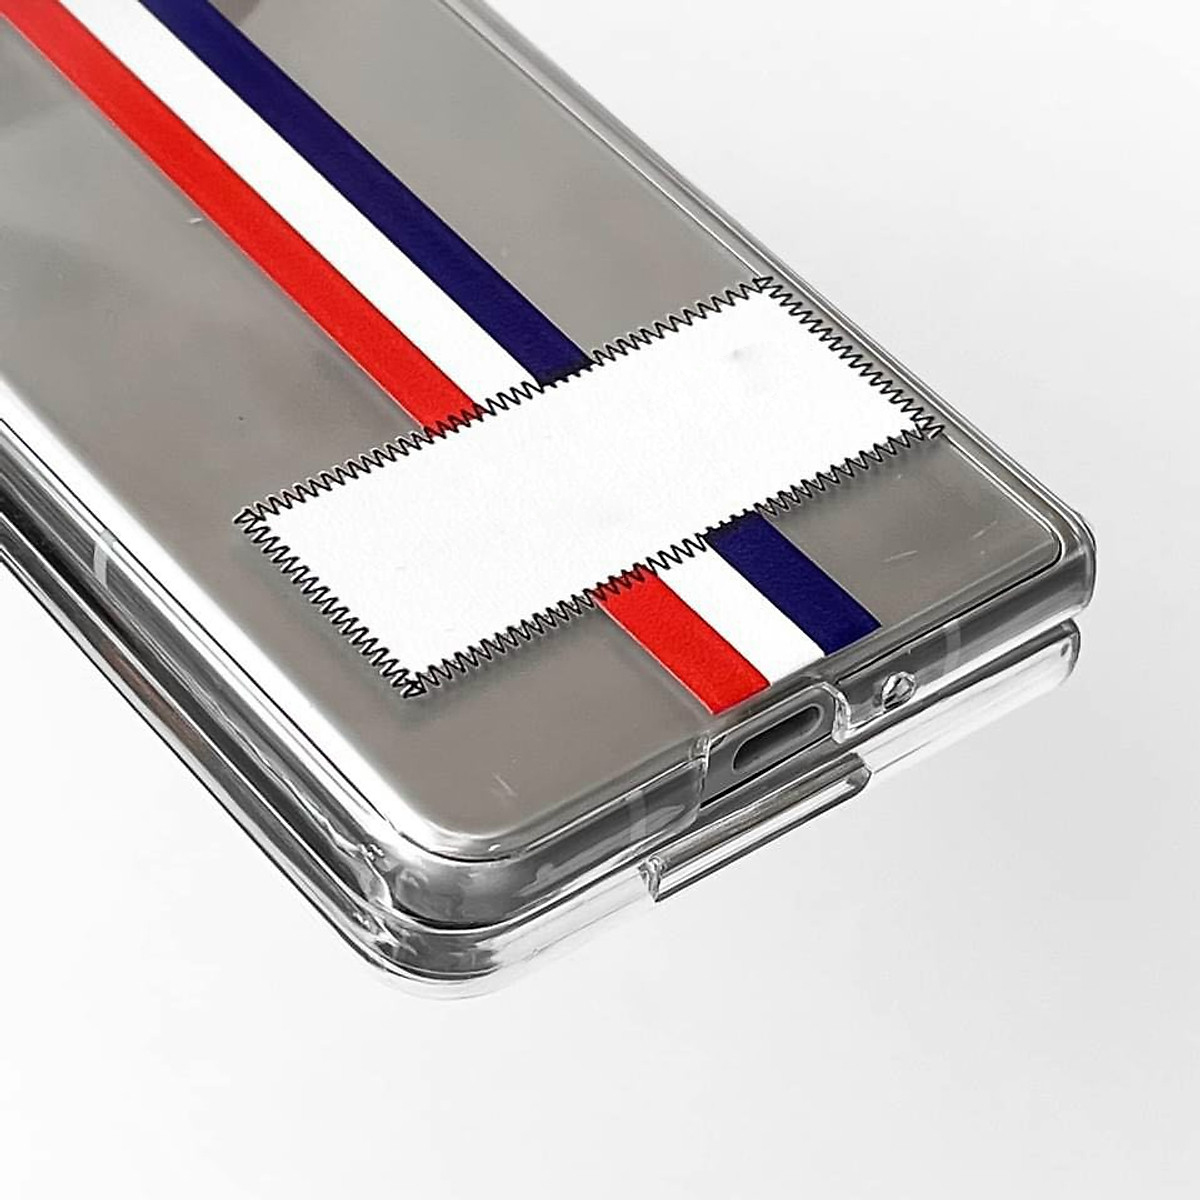 Hình ảnh Ốp lưng chống sốc dành cho Samsung Galaxy Note 20 Ultra hiệu Likgus Thom Brow chất liệu cao cấp, thiết kế thời trang họa tiết 3 sọc màu) - hàng nhập khẩu